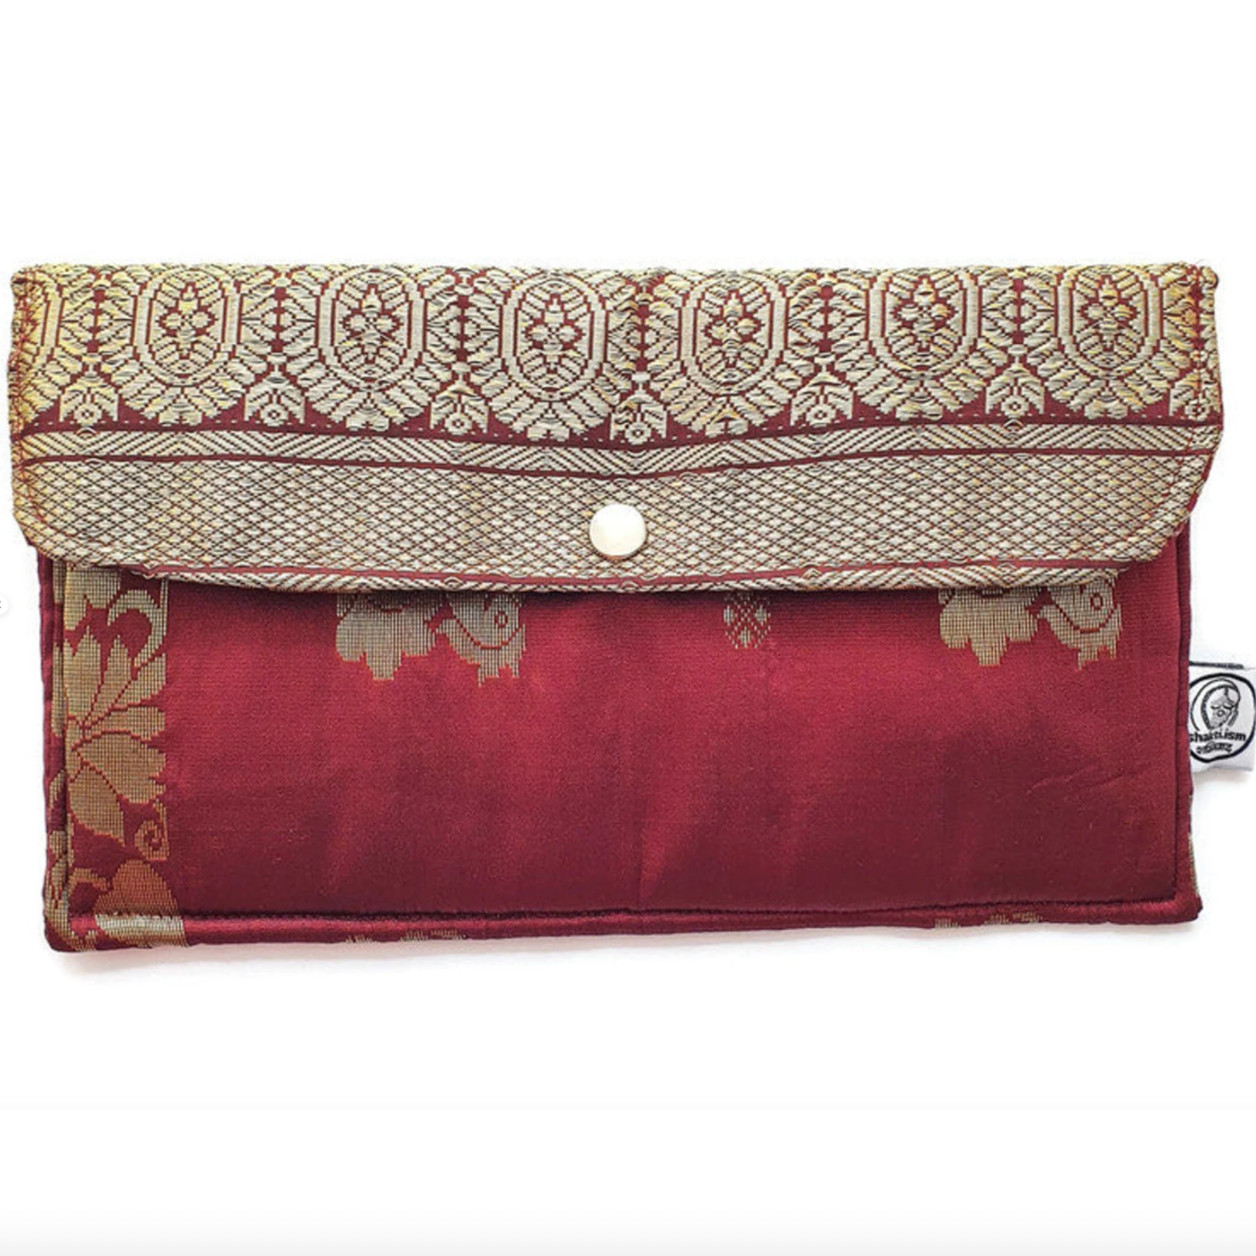 Handmade Sari Clutch Bag - Burgundy gold